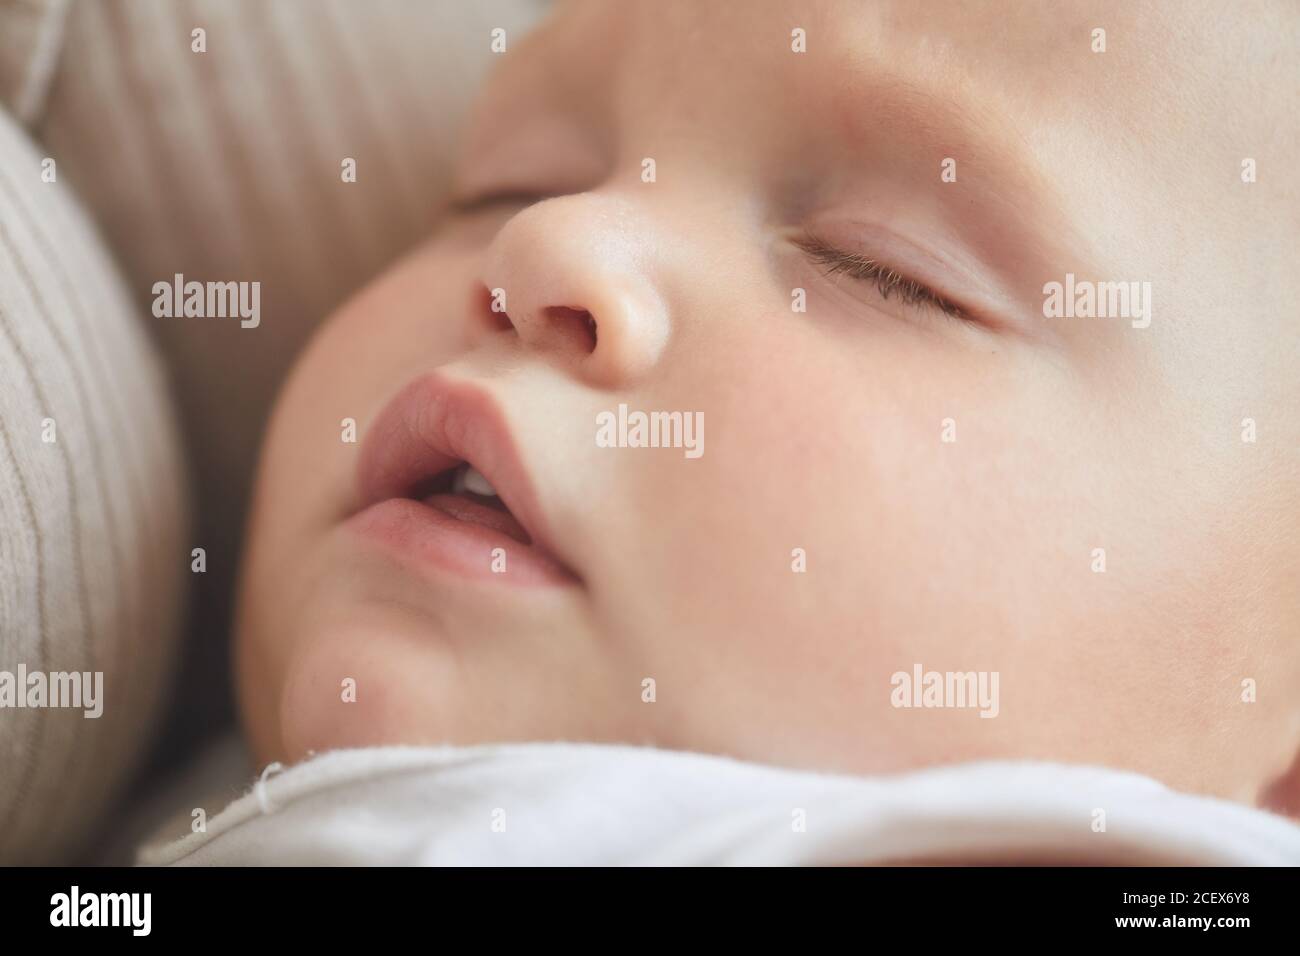 Horizontale Nahaufnahme des schlafenden Gesichts des kaukasischen Jungen mit Sein Mund öffnet sich Stockfoto